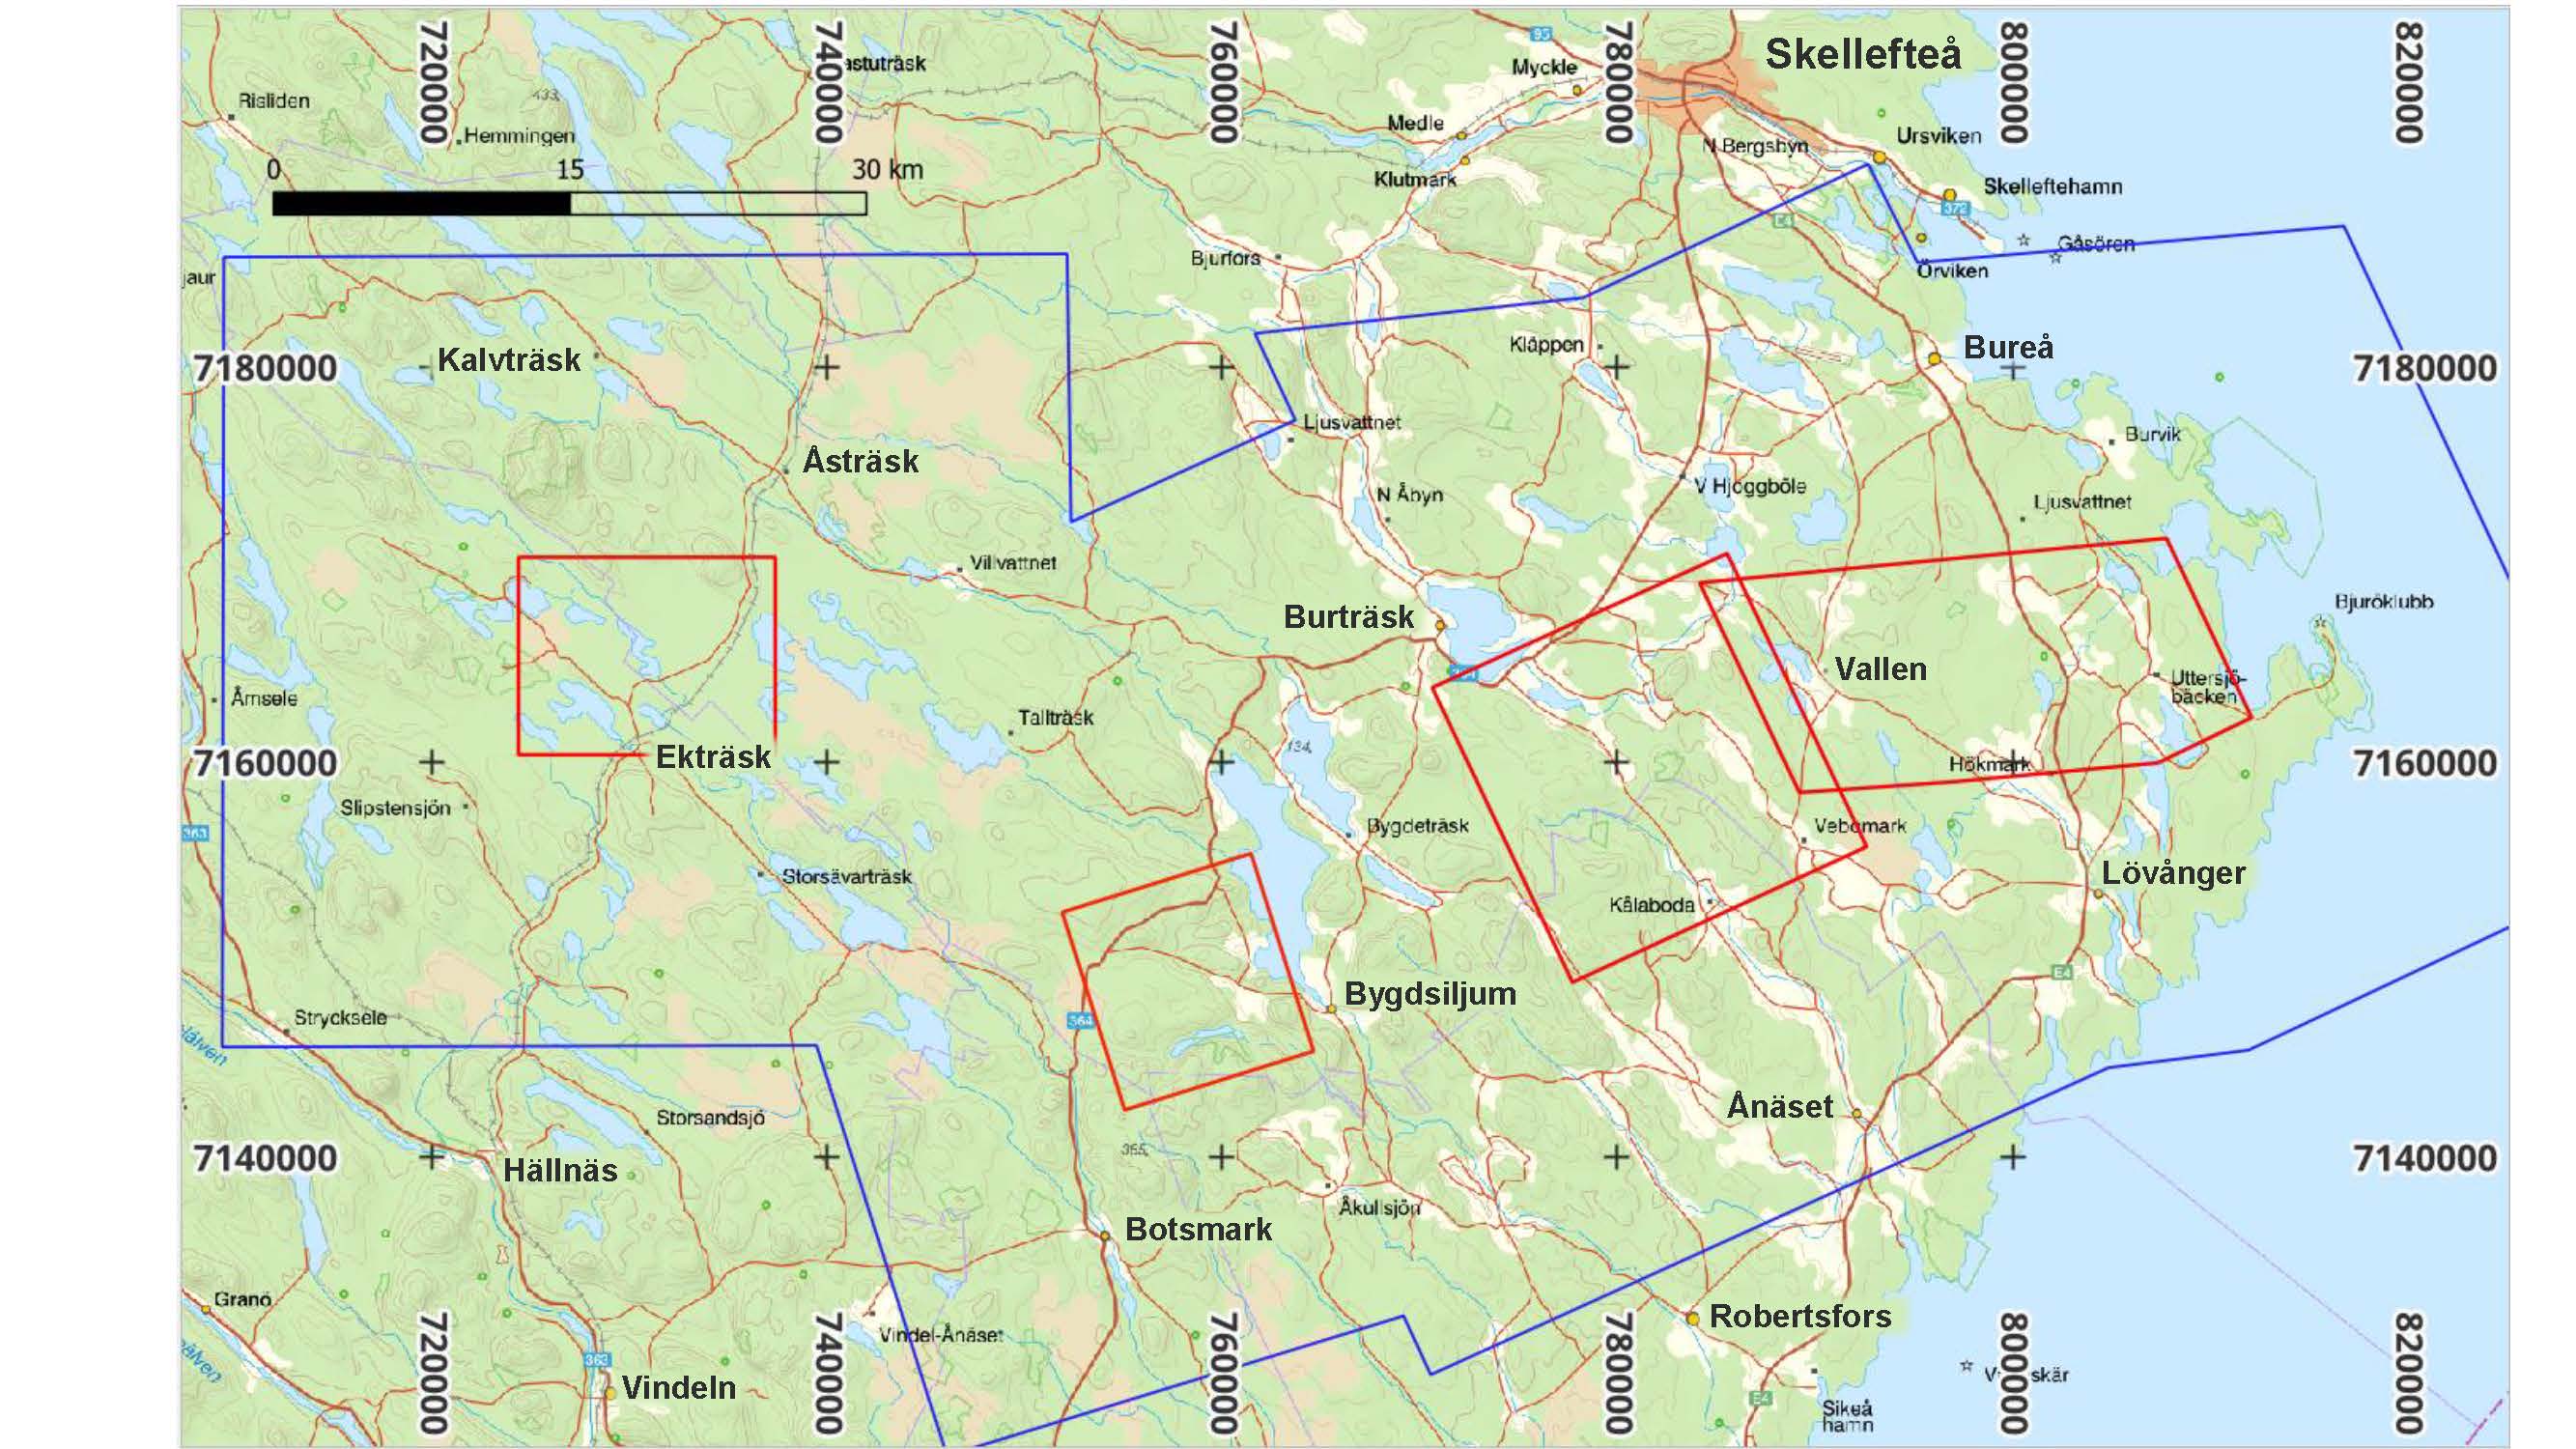 Kartbild över Västerbotten med röda och blå markeringar.